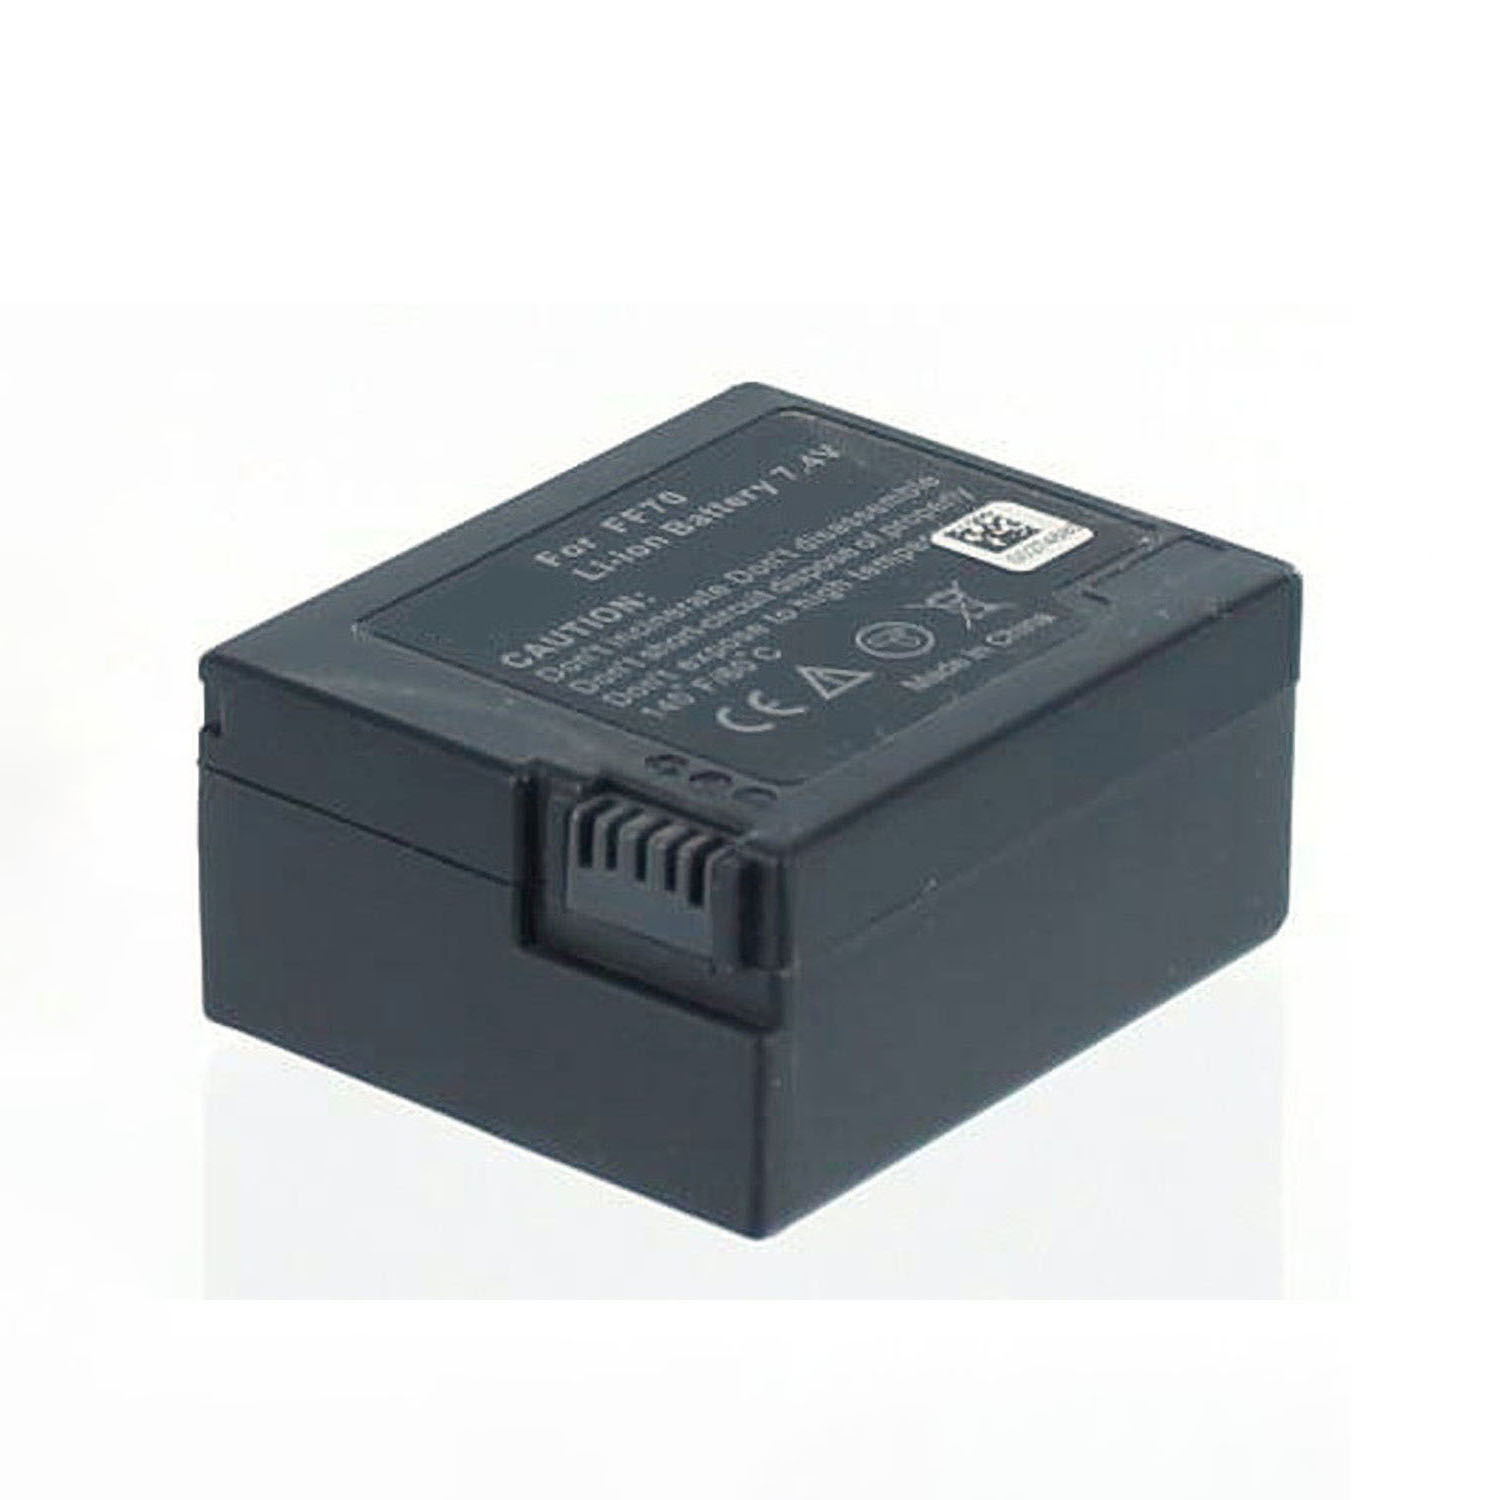 1300 Volt, Sony AGI kompatibel NP-FF70 7.2 Li-Ion, mAh Camcorderakku, Li-Ion mit Akku